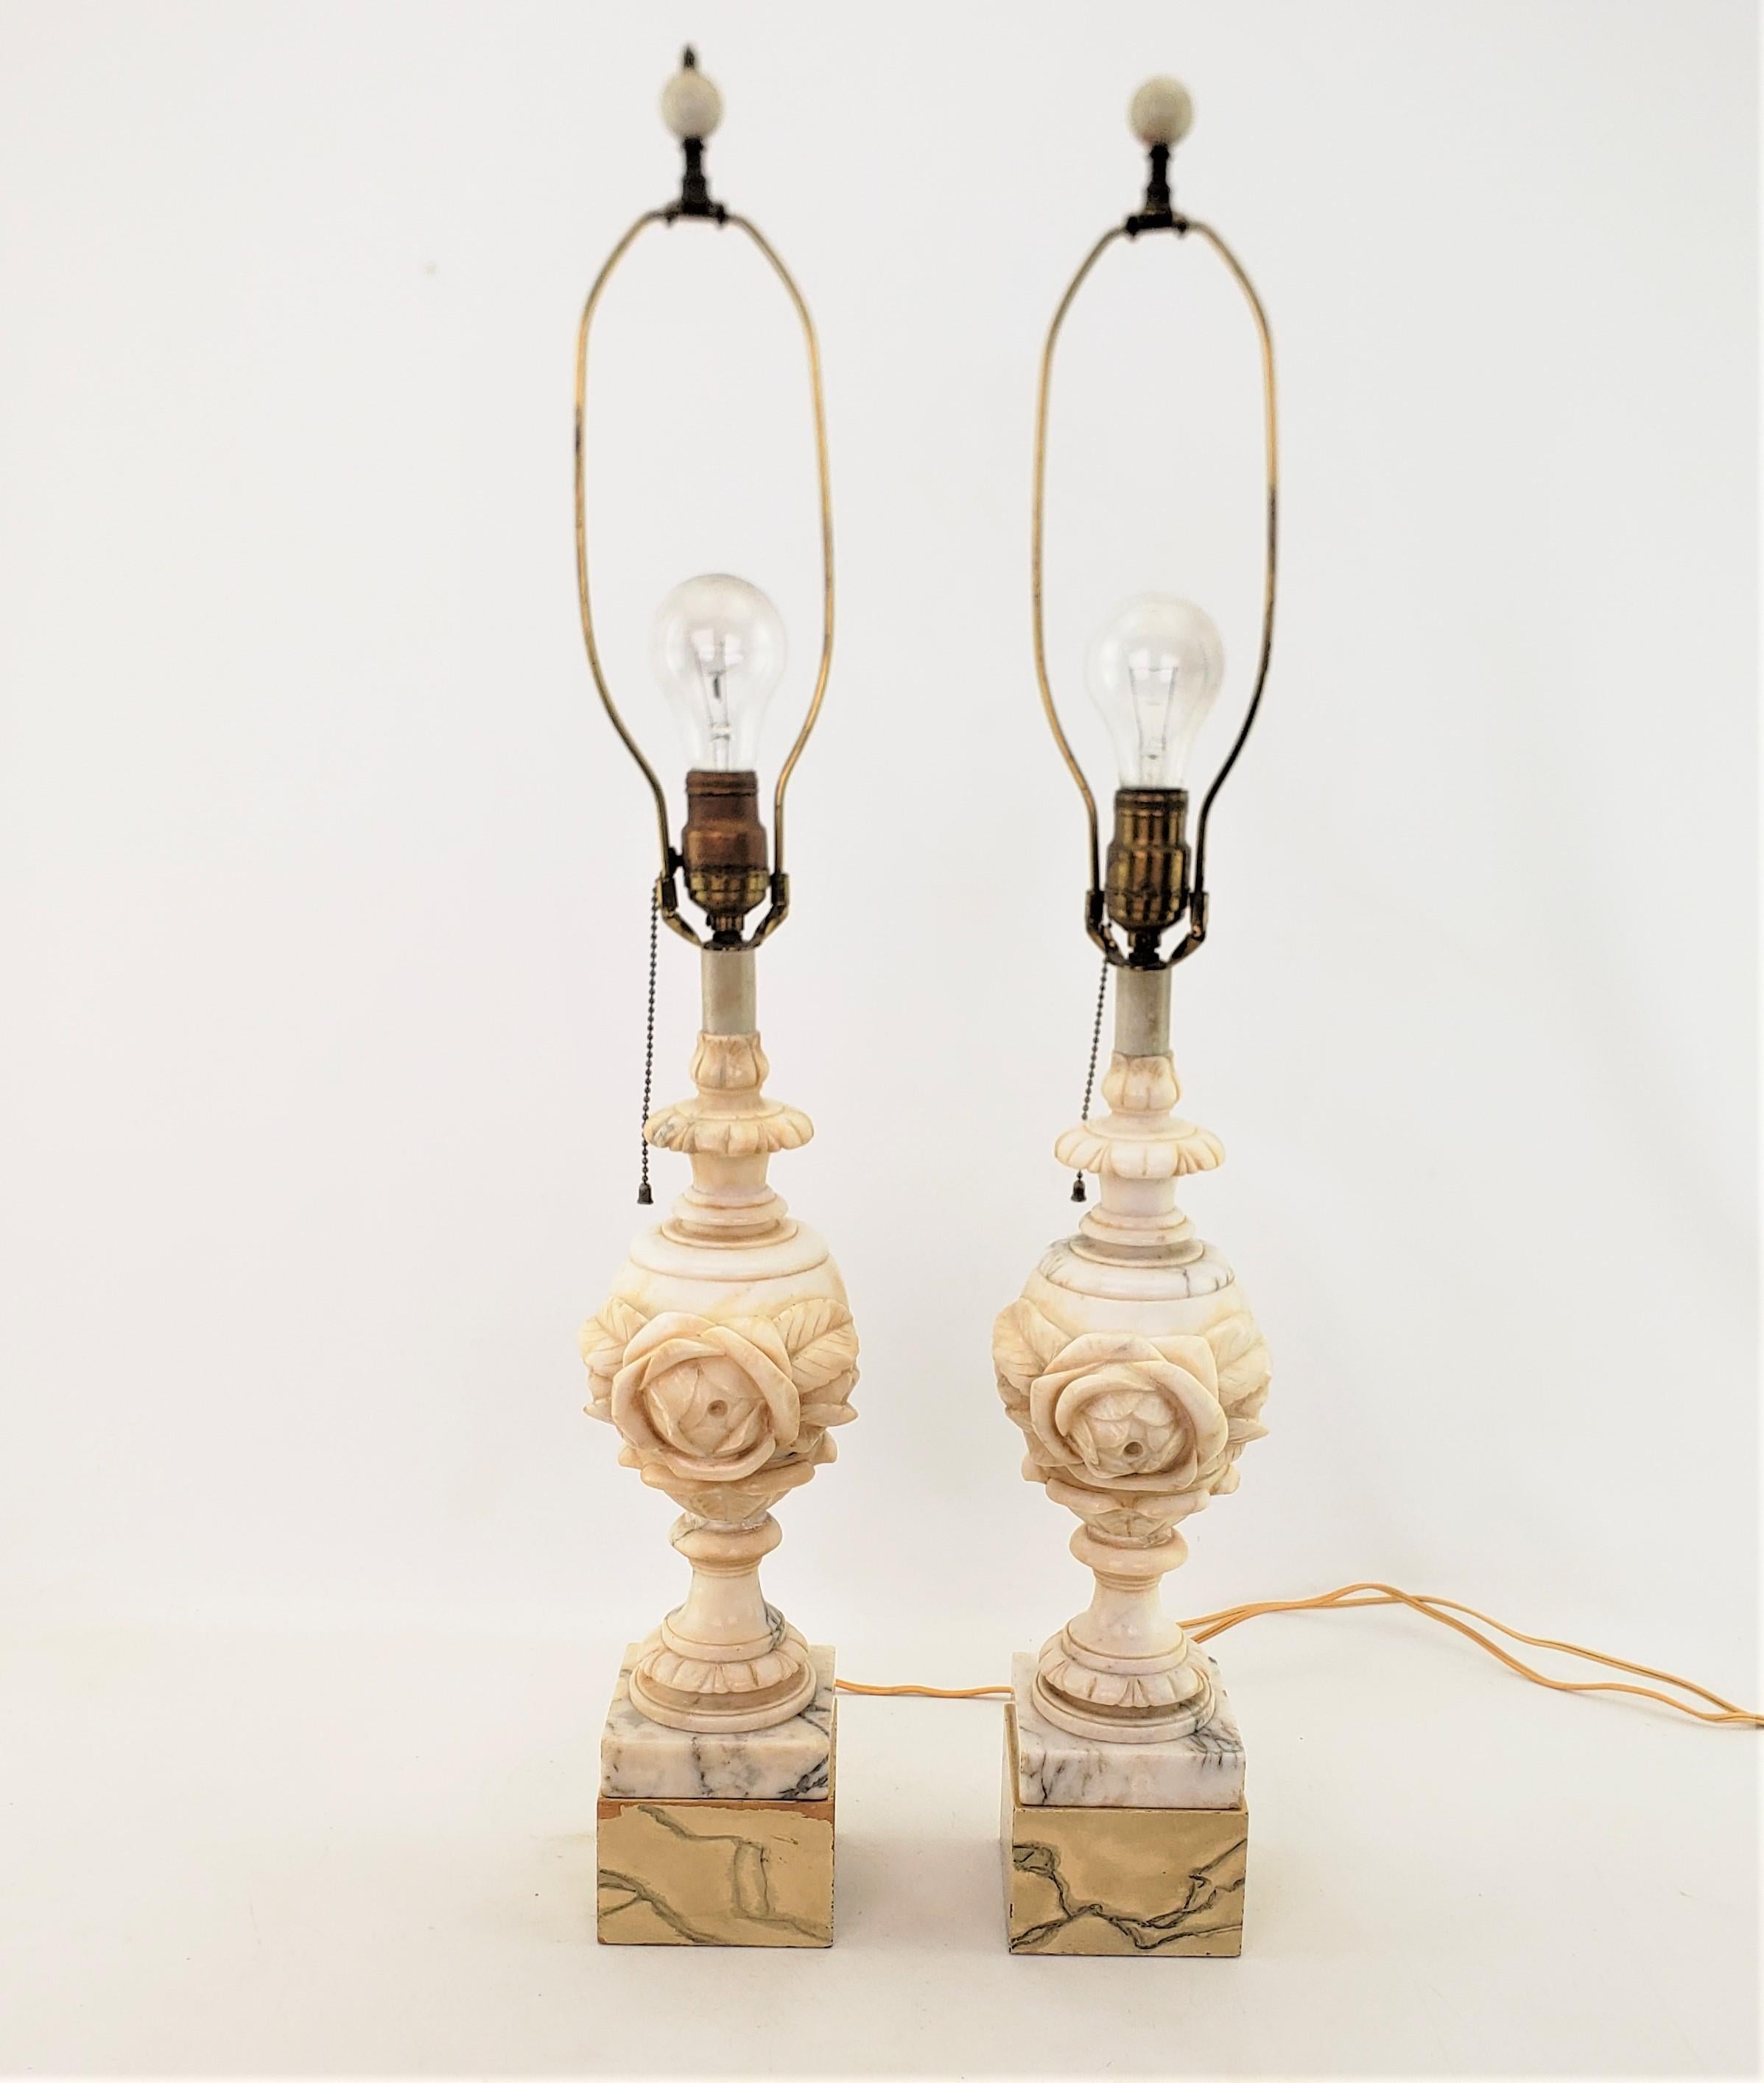 Dieses Paar antiker Lampen ist unsigniert, stammt aber vermutlich aus Italien und wurde um 1920 im neoklassizistischen Revival-Stil gefertigt. Die Lampen bestehen aus geädertem Alabaster mit hinzugefügten Holzblocksockeln mit Marmorimitat und einer